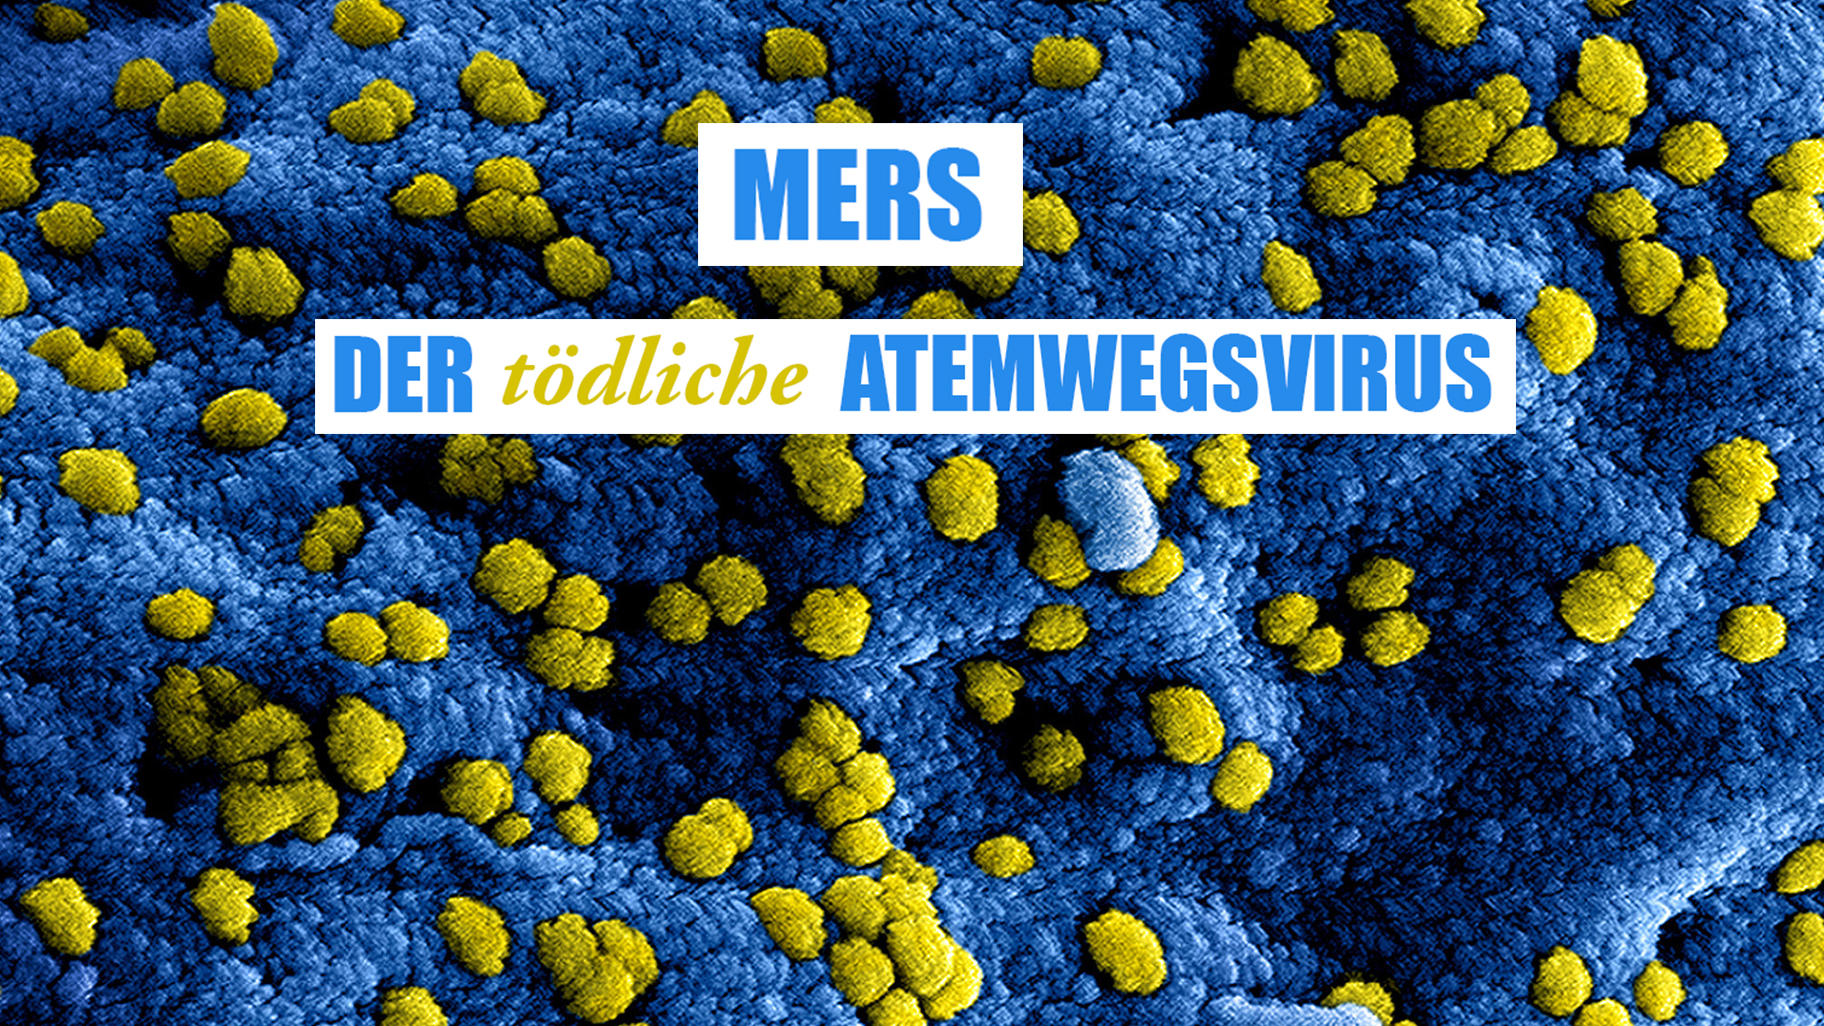 MERS - der tödliche Atemwegsvirus Ursprung, Überträger, Symptome, Prävention